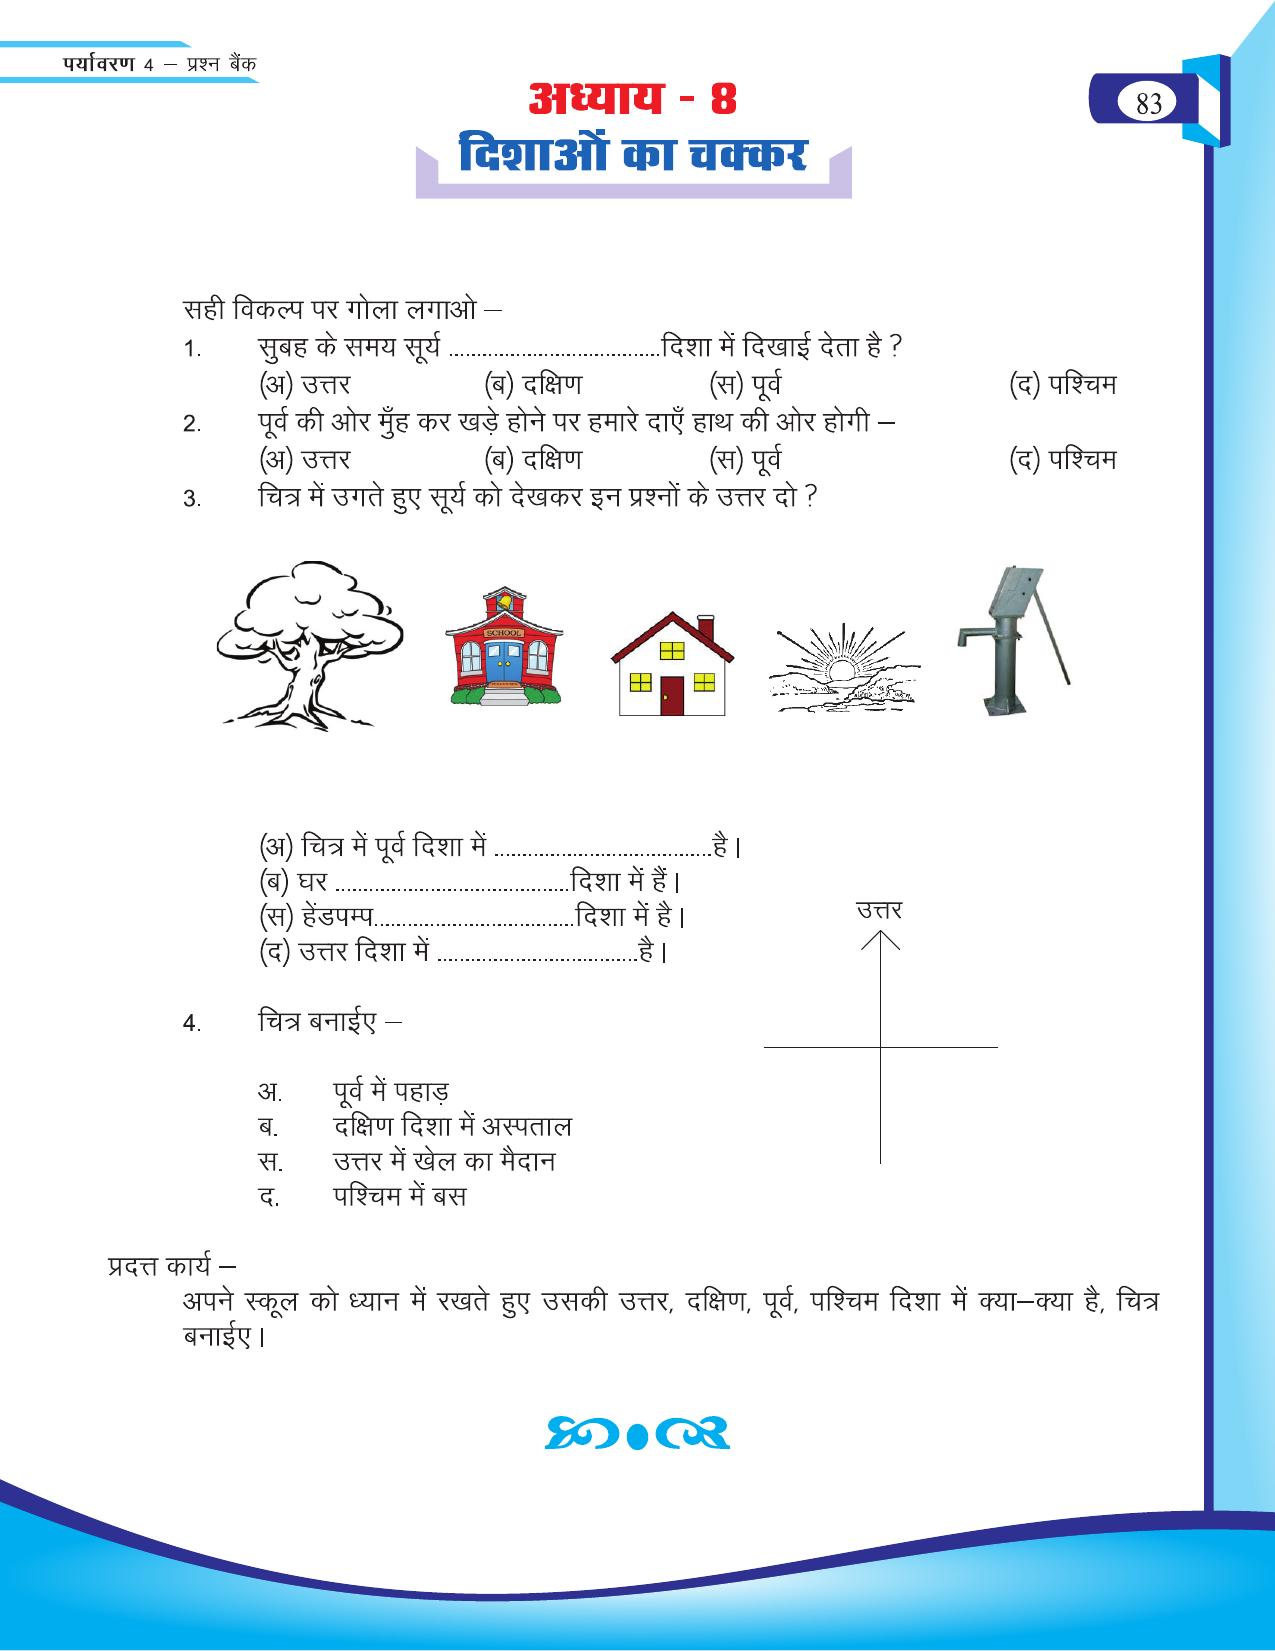 Chhattisgarh Board Class 4 EVS Question Bank 2015-16 - Page 12